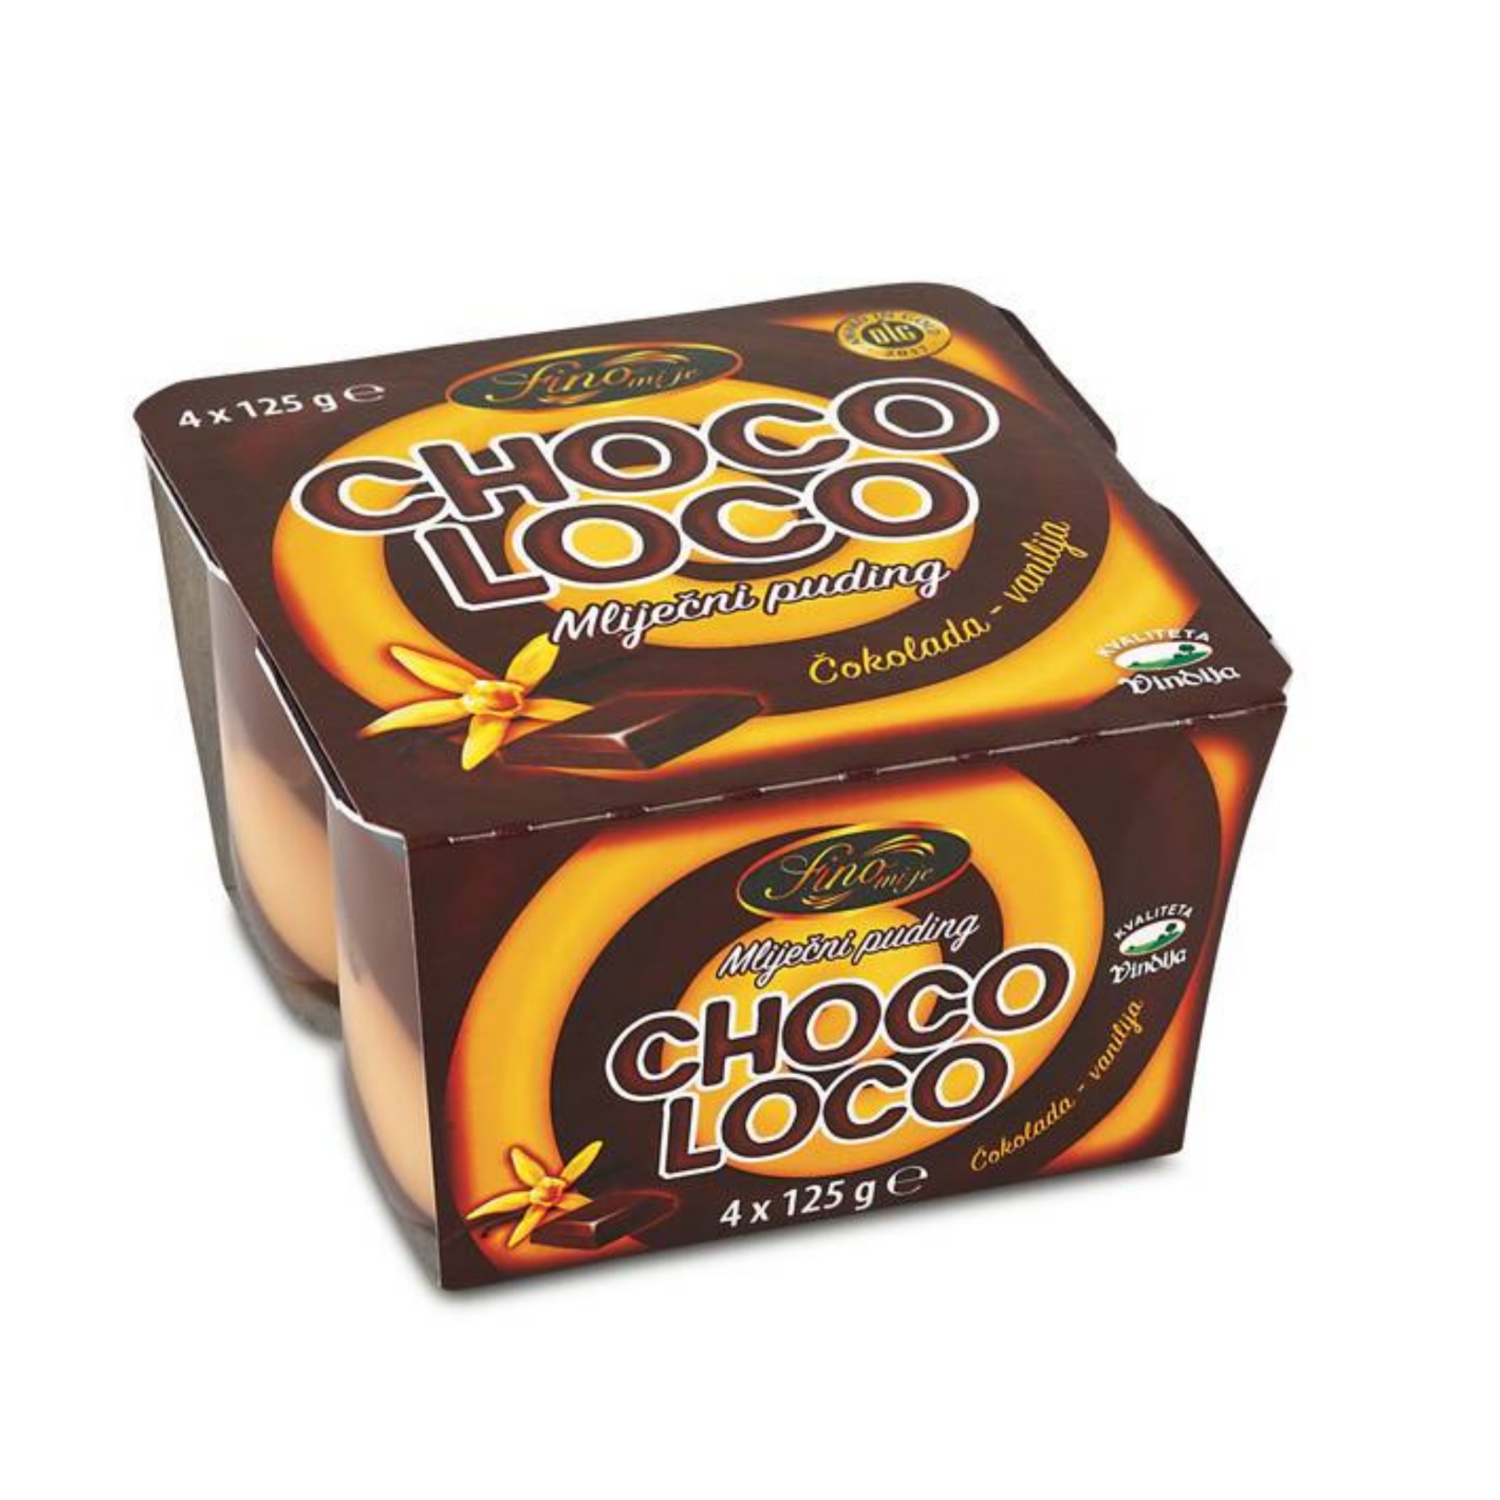 FINO MI JE Puding Choco-loco